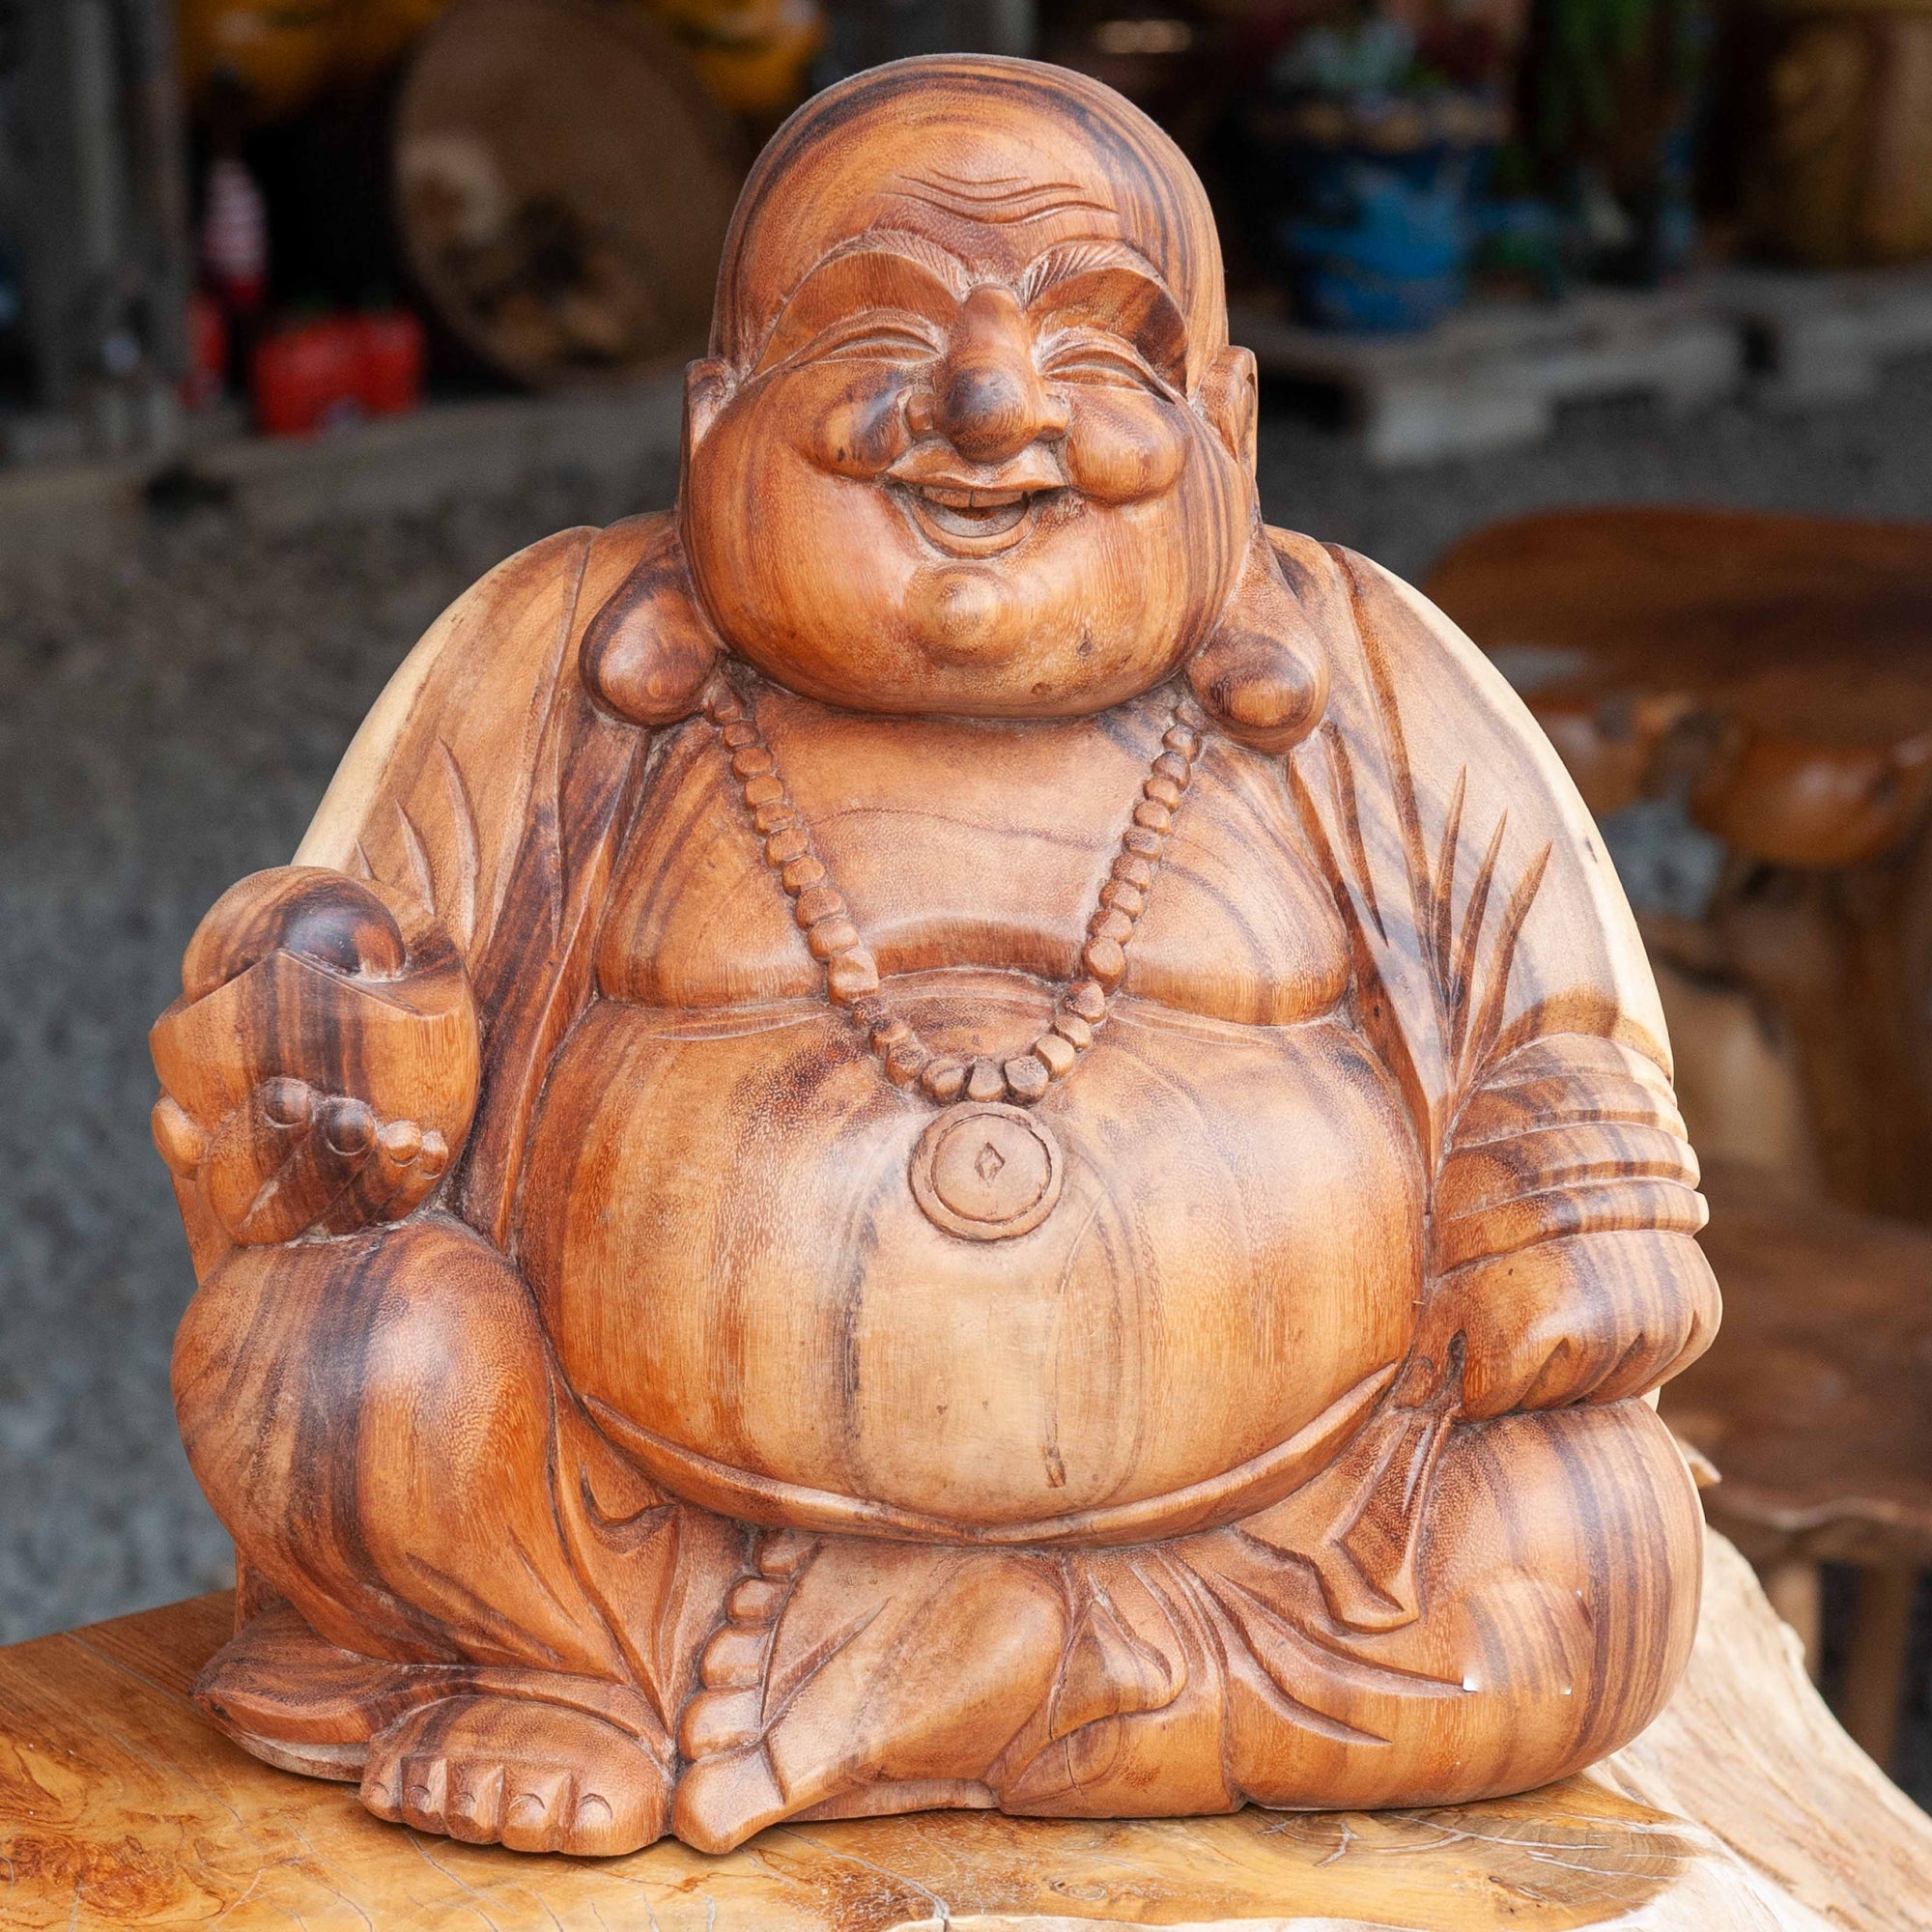 Extra-Large Happy Wooden Buddha